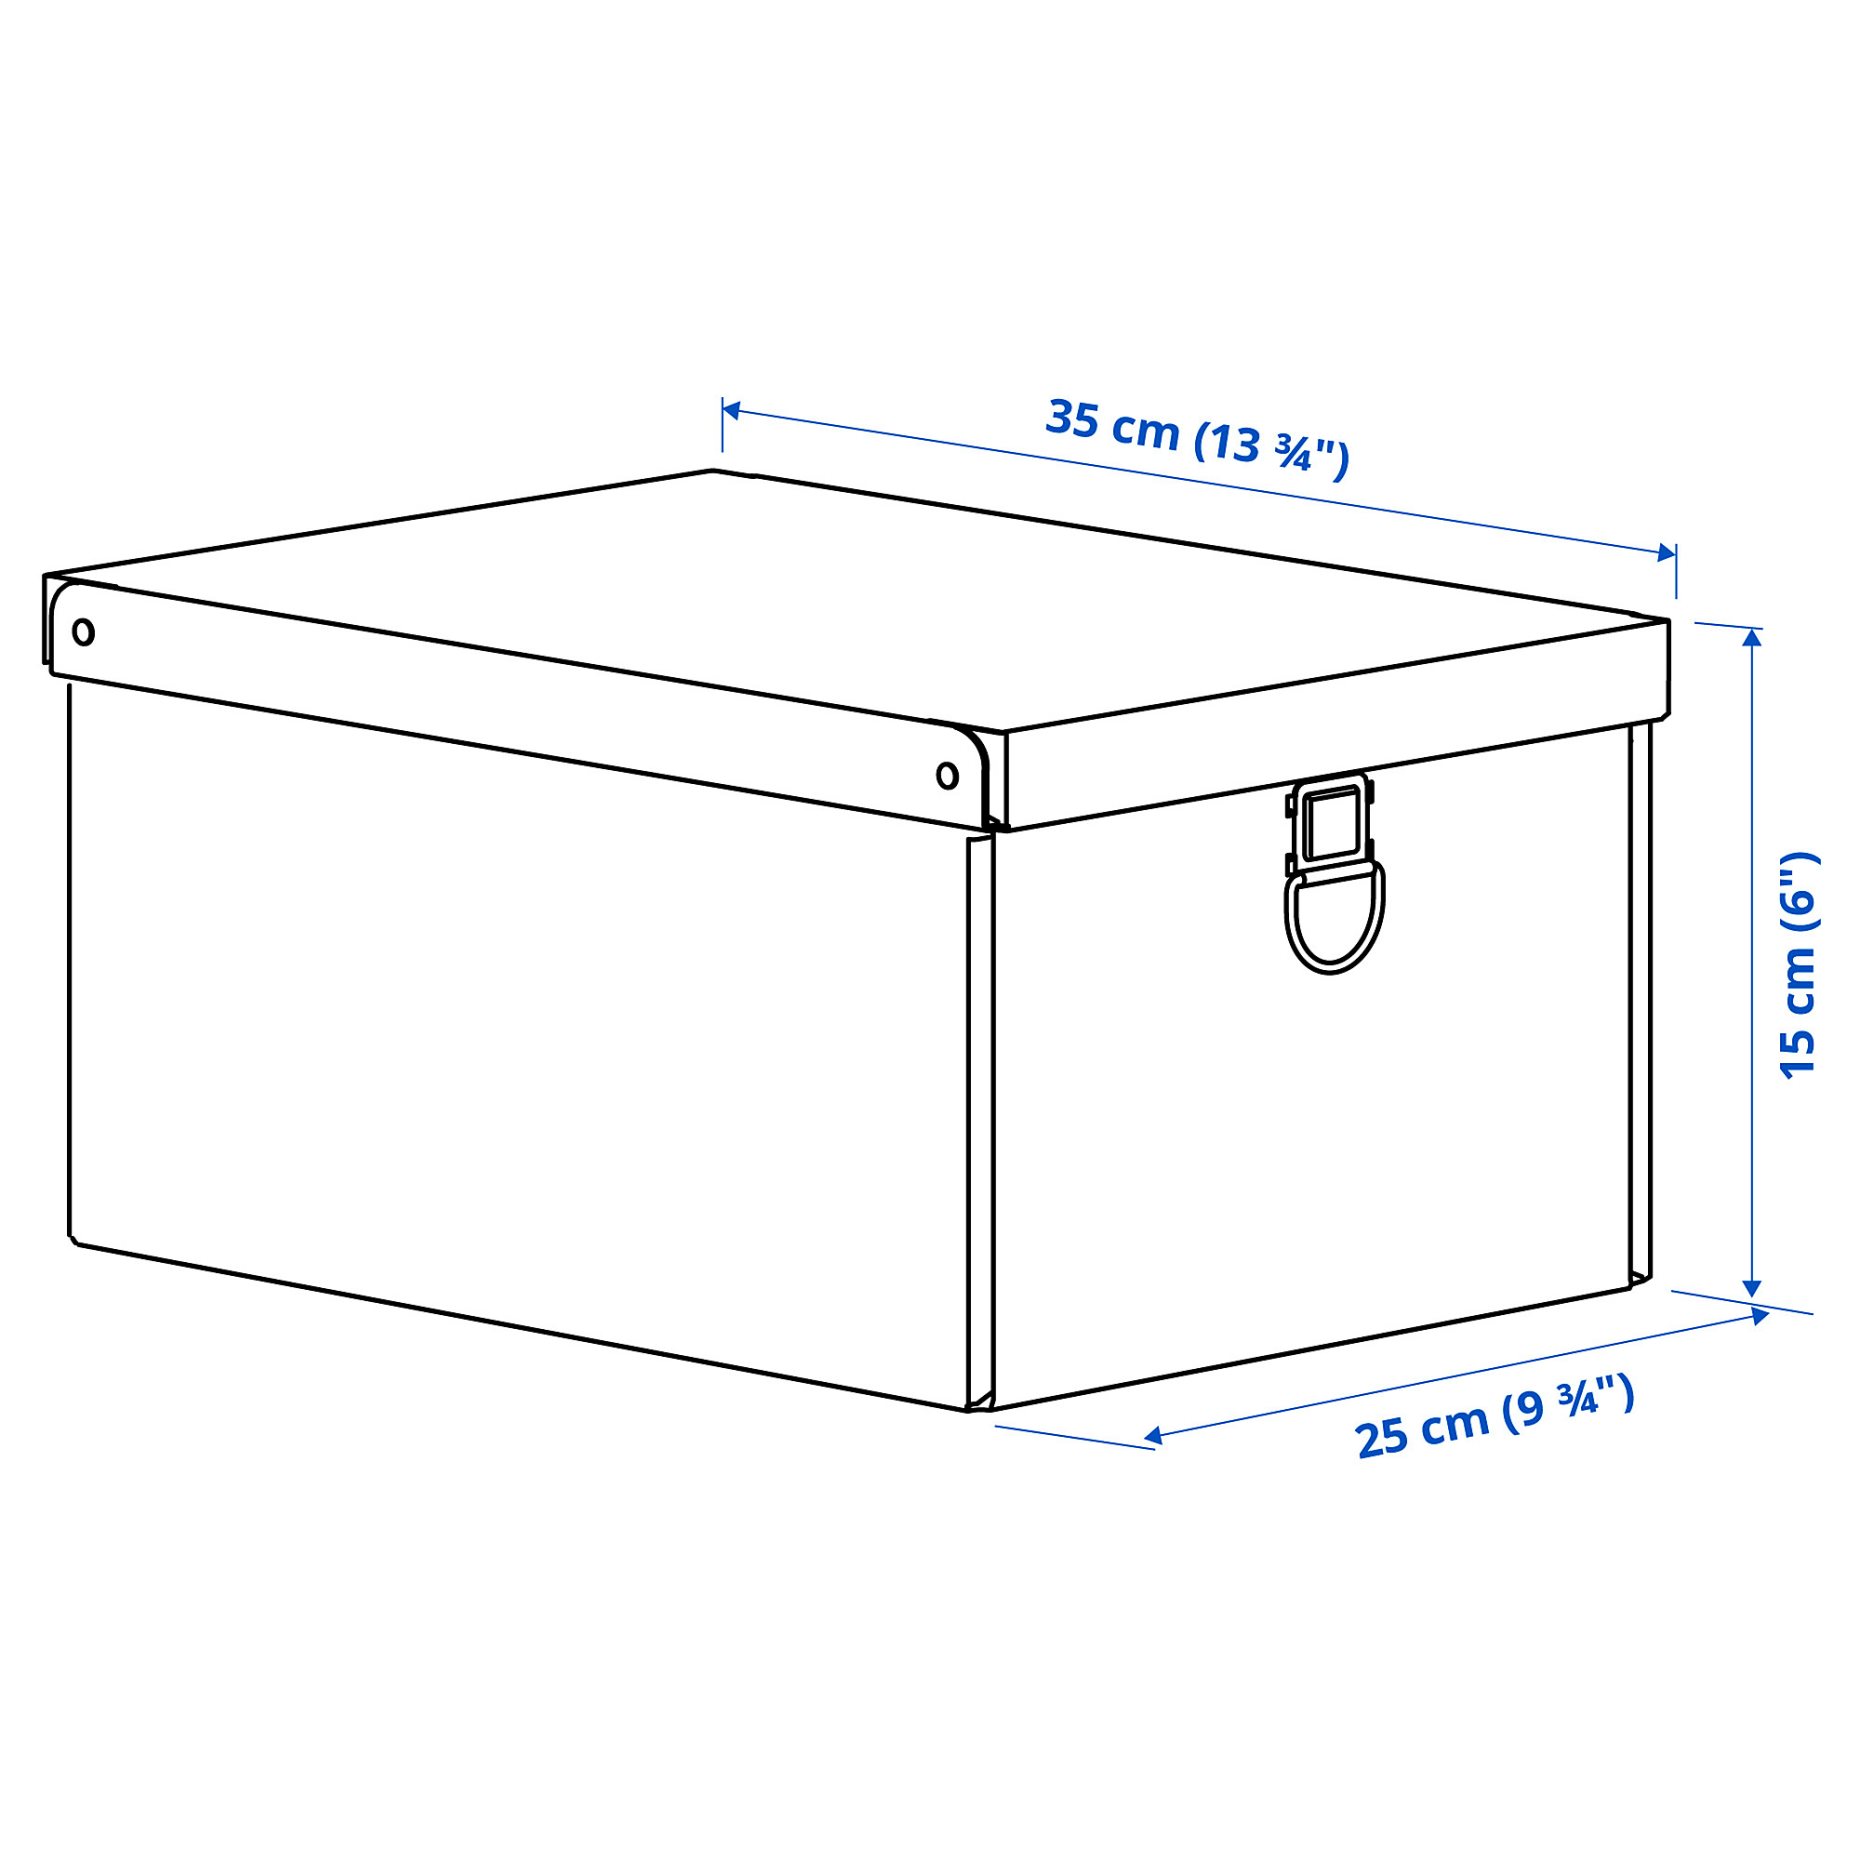 NIMM, storage box with lid, 25x35x15 cm, 005.523.84